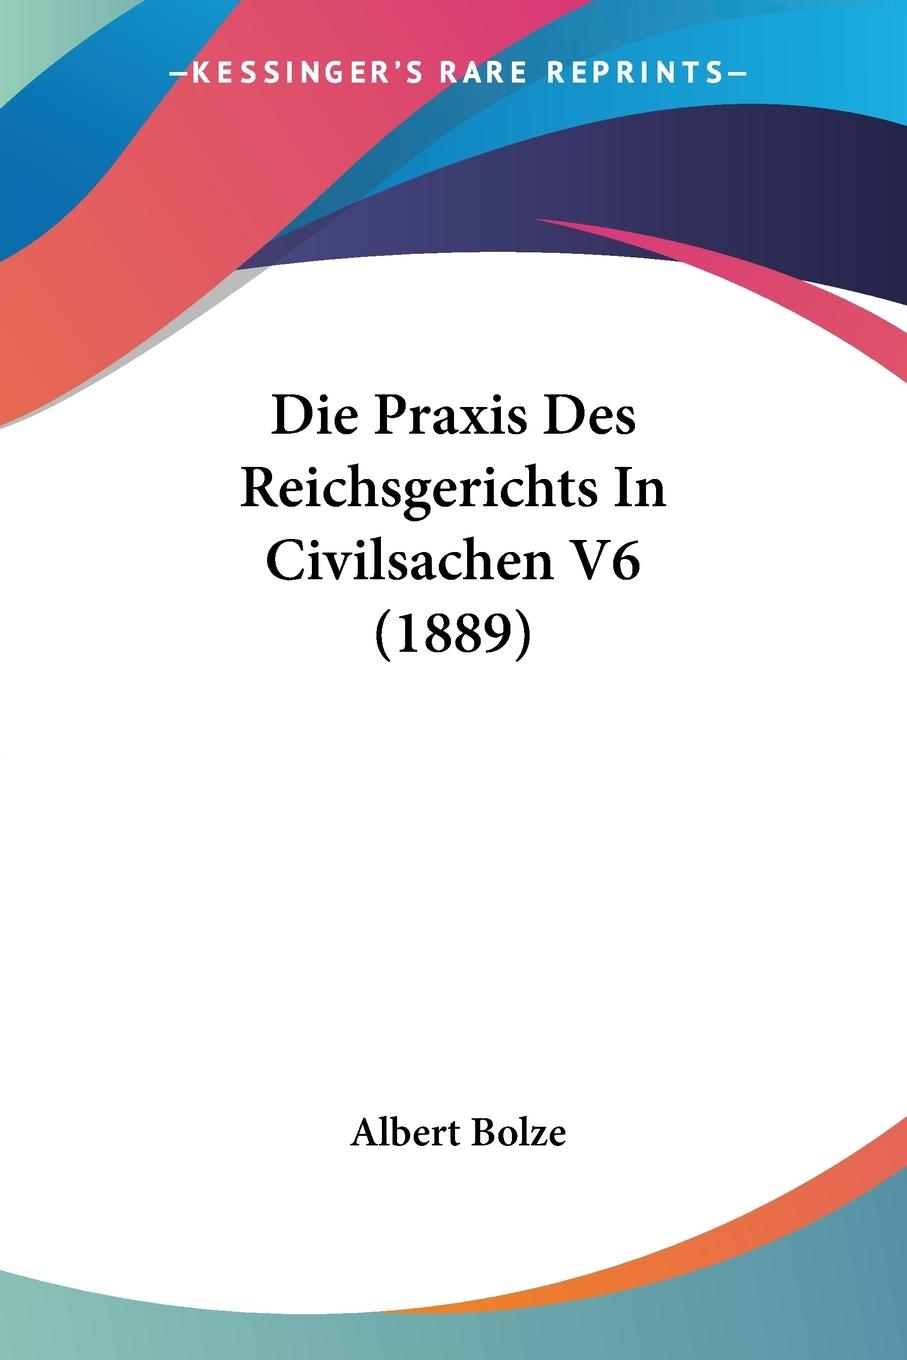 Die Praxis Des Reichsgerichts In Civilsachen V6 (1889)